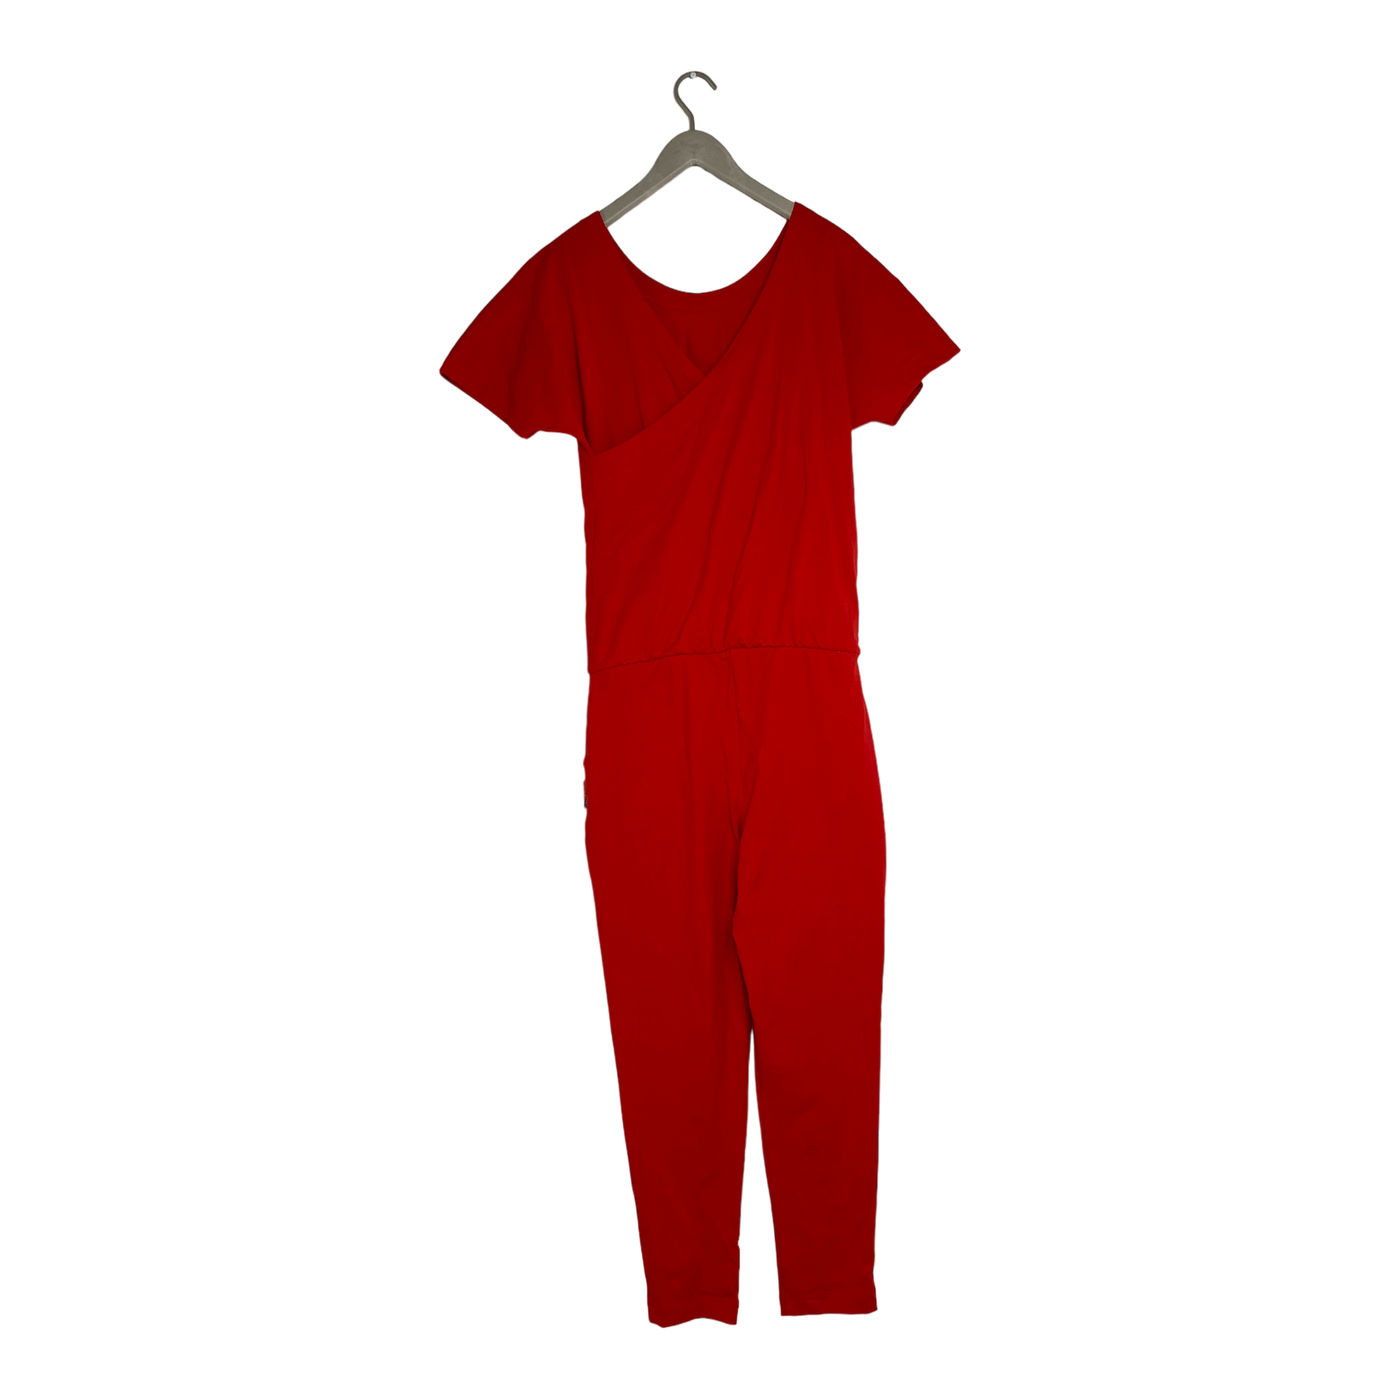 Ommellinen lempihaalari jumpsuit, red | woman M